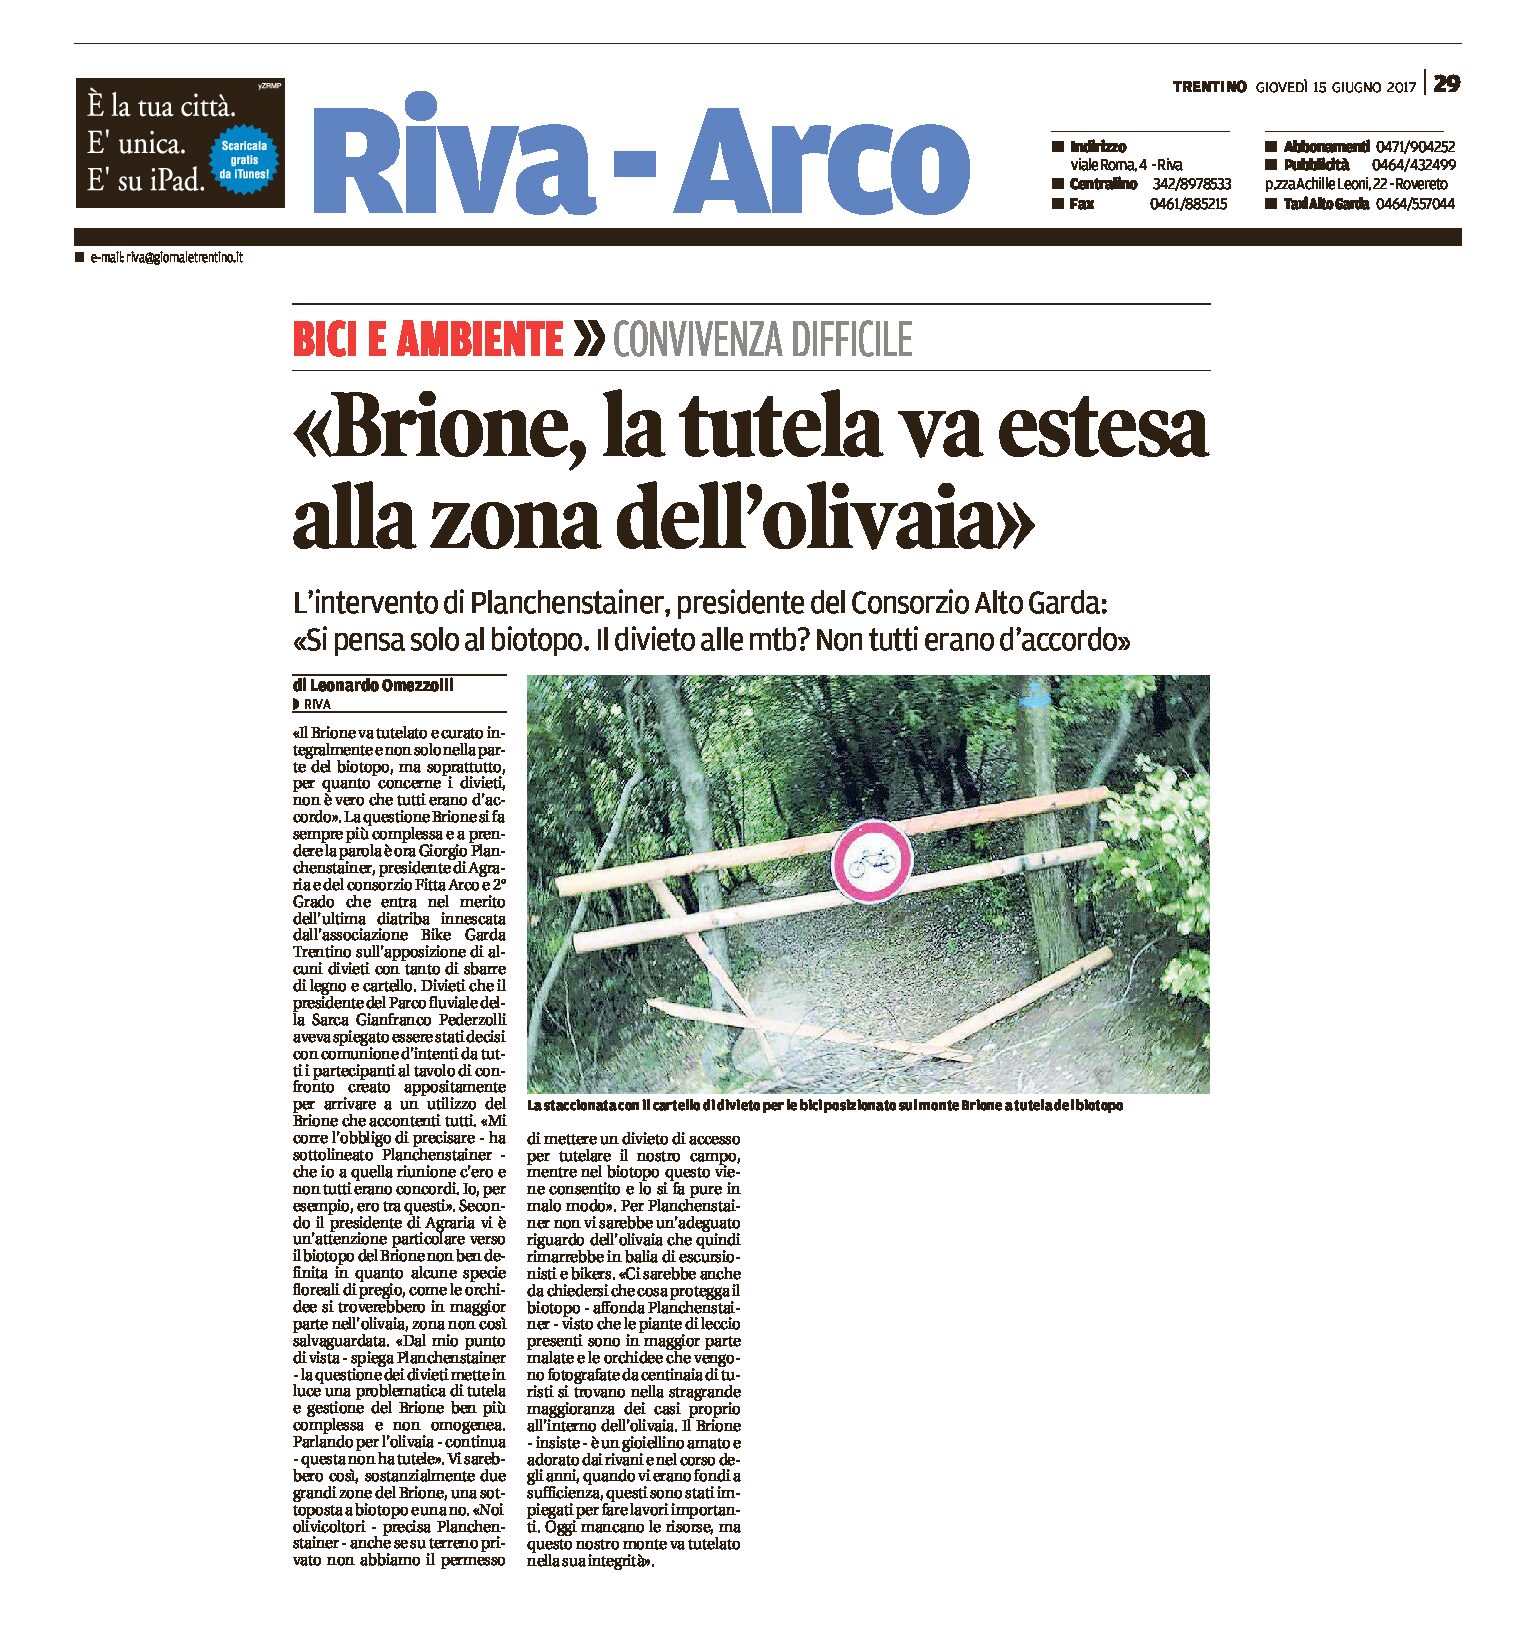 Brione: la tutela va estesa alla zona dell’olivaia